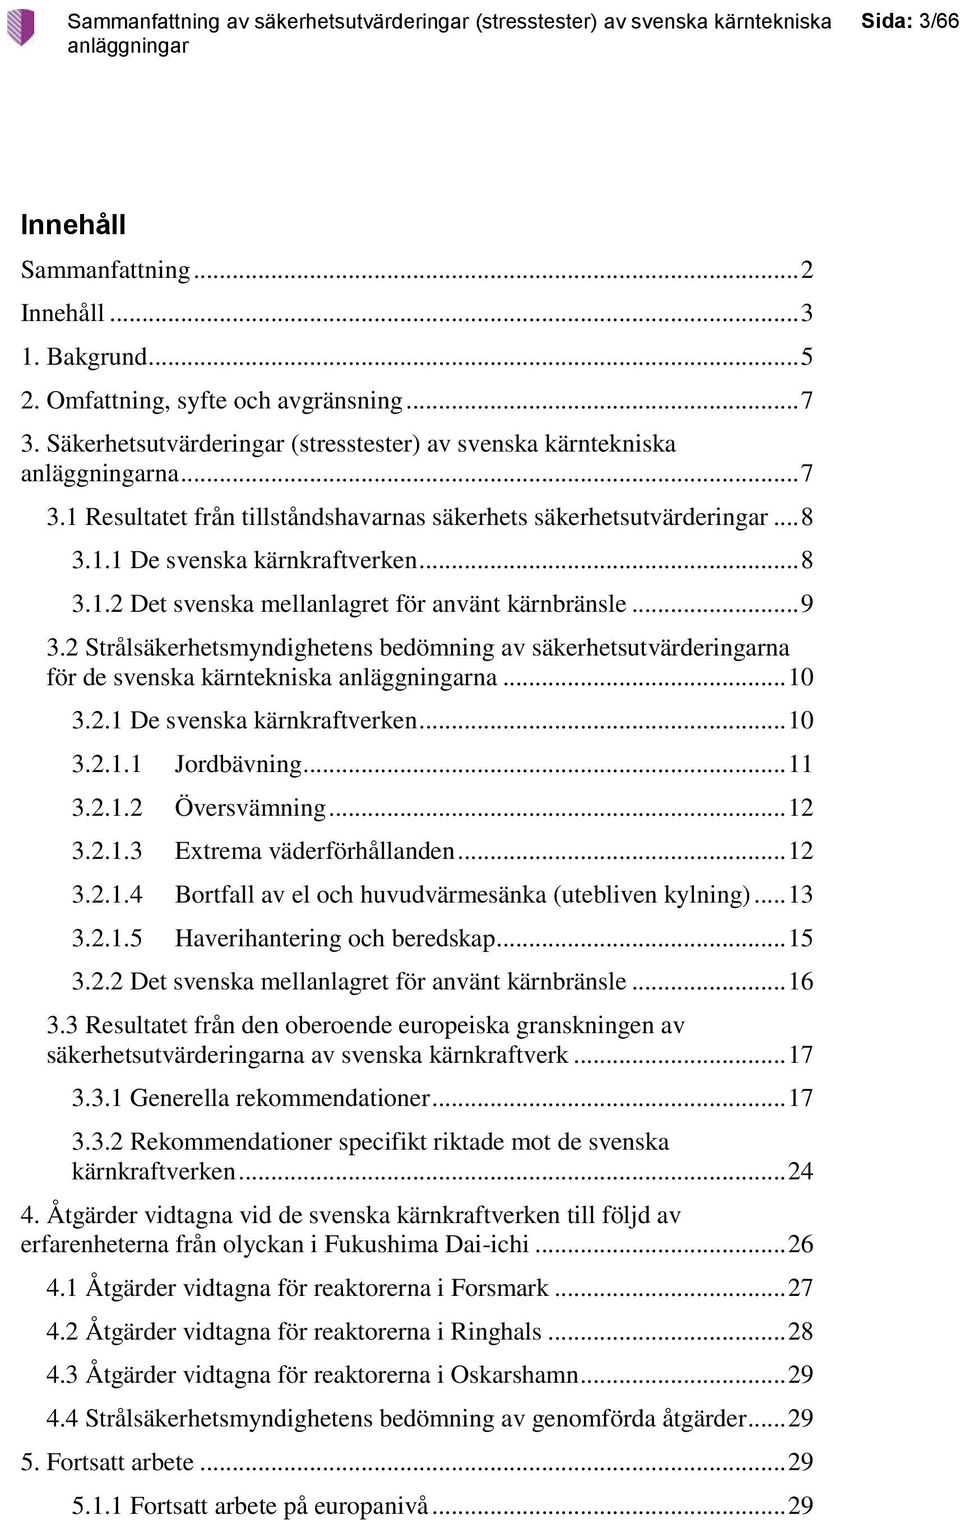 2 Strålsäkerhetsmyndighetens bedömning av säkerhetsutvärderingarna för de svenska kärntekniska na... 10 3.2.1 De svenska kärnkraftverken... 10 3.2.1.1 Jordbävning... 11 3.2.1.2 Översvämning... 12 3.2.1.3 Extrema väderförhållanden.